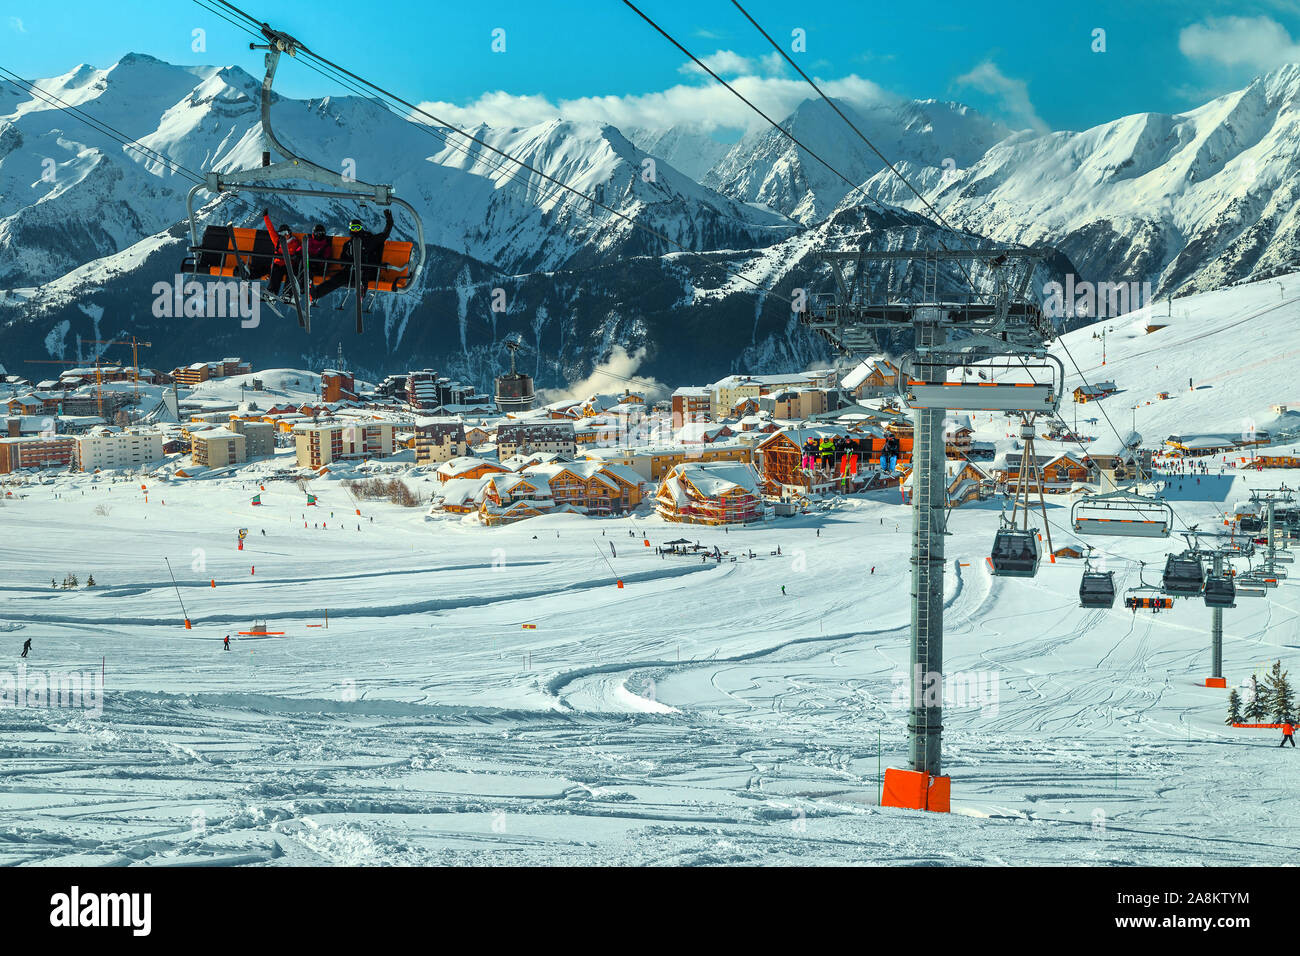 Incredibile inverno alpino località sciistica nelle Alpi francesi. Incredibile paesaggio urbano con impianti di risalita, funivie e fantastiche piste da sci in montagna, Alpe d Huez, Foto Stock